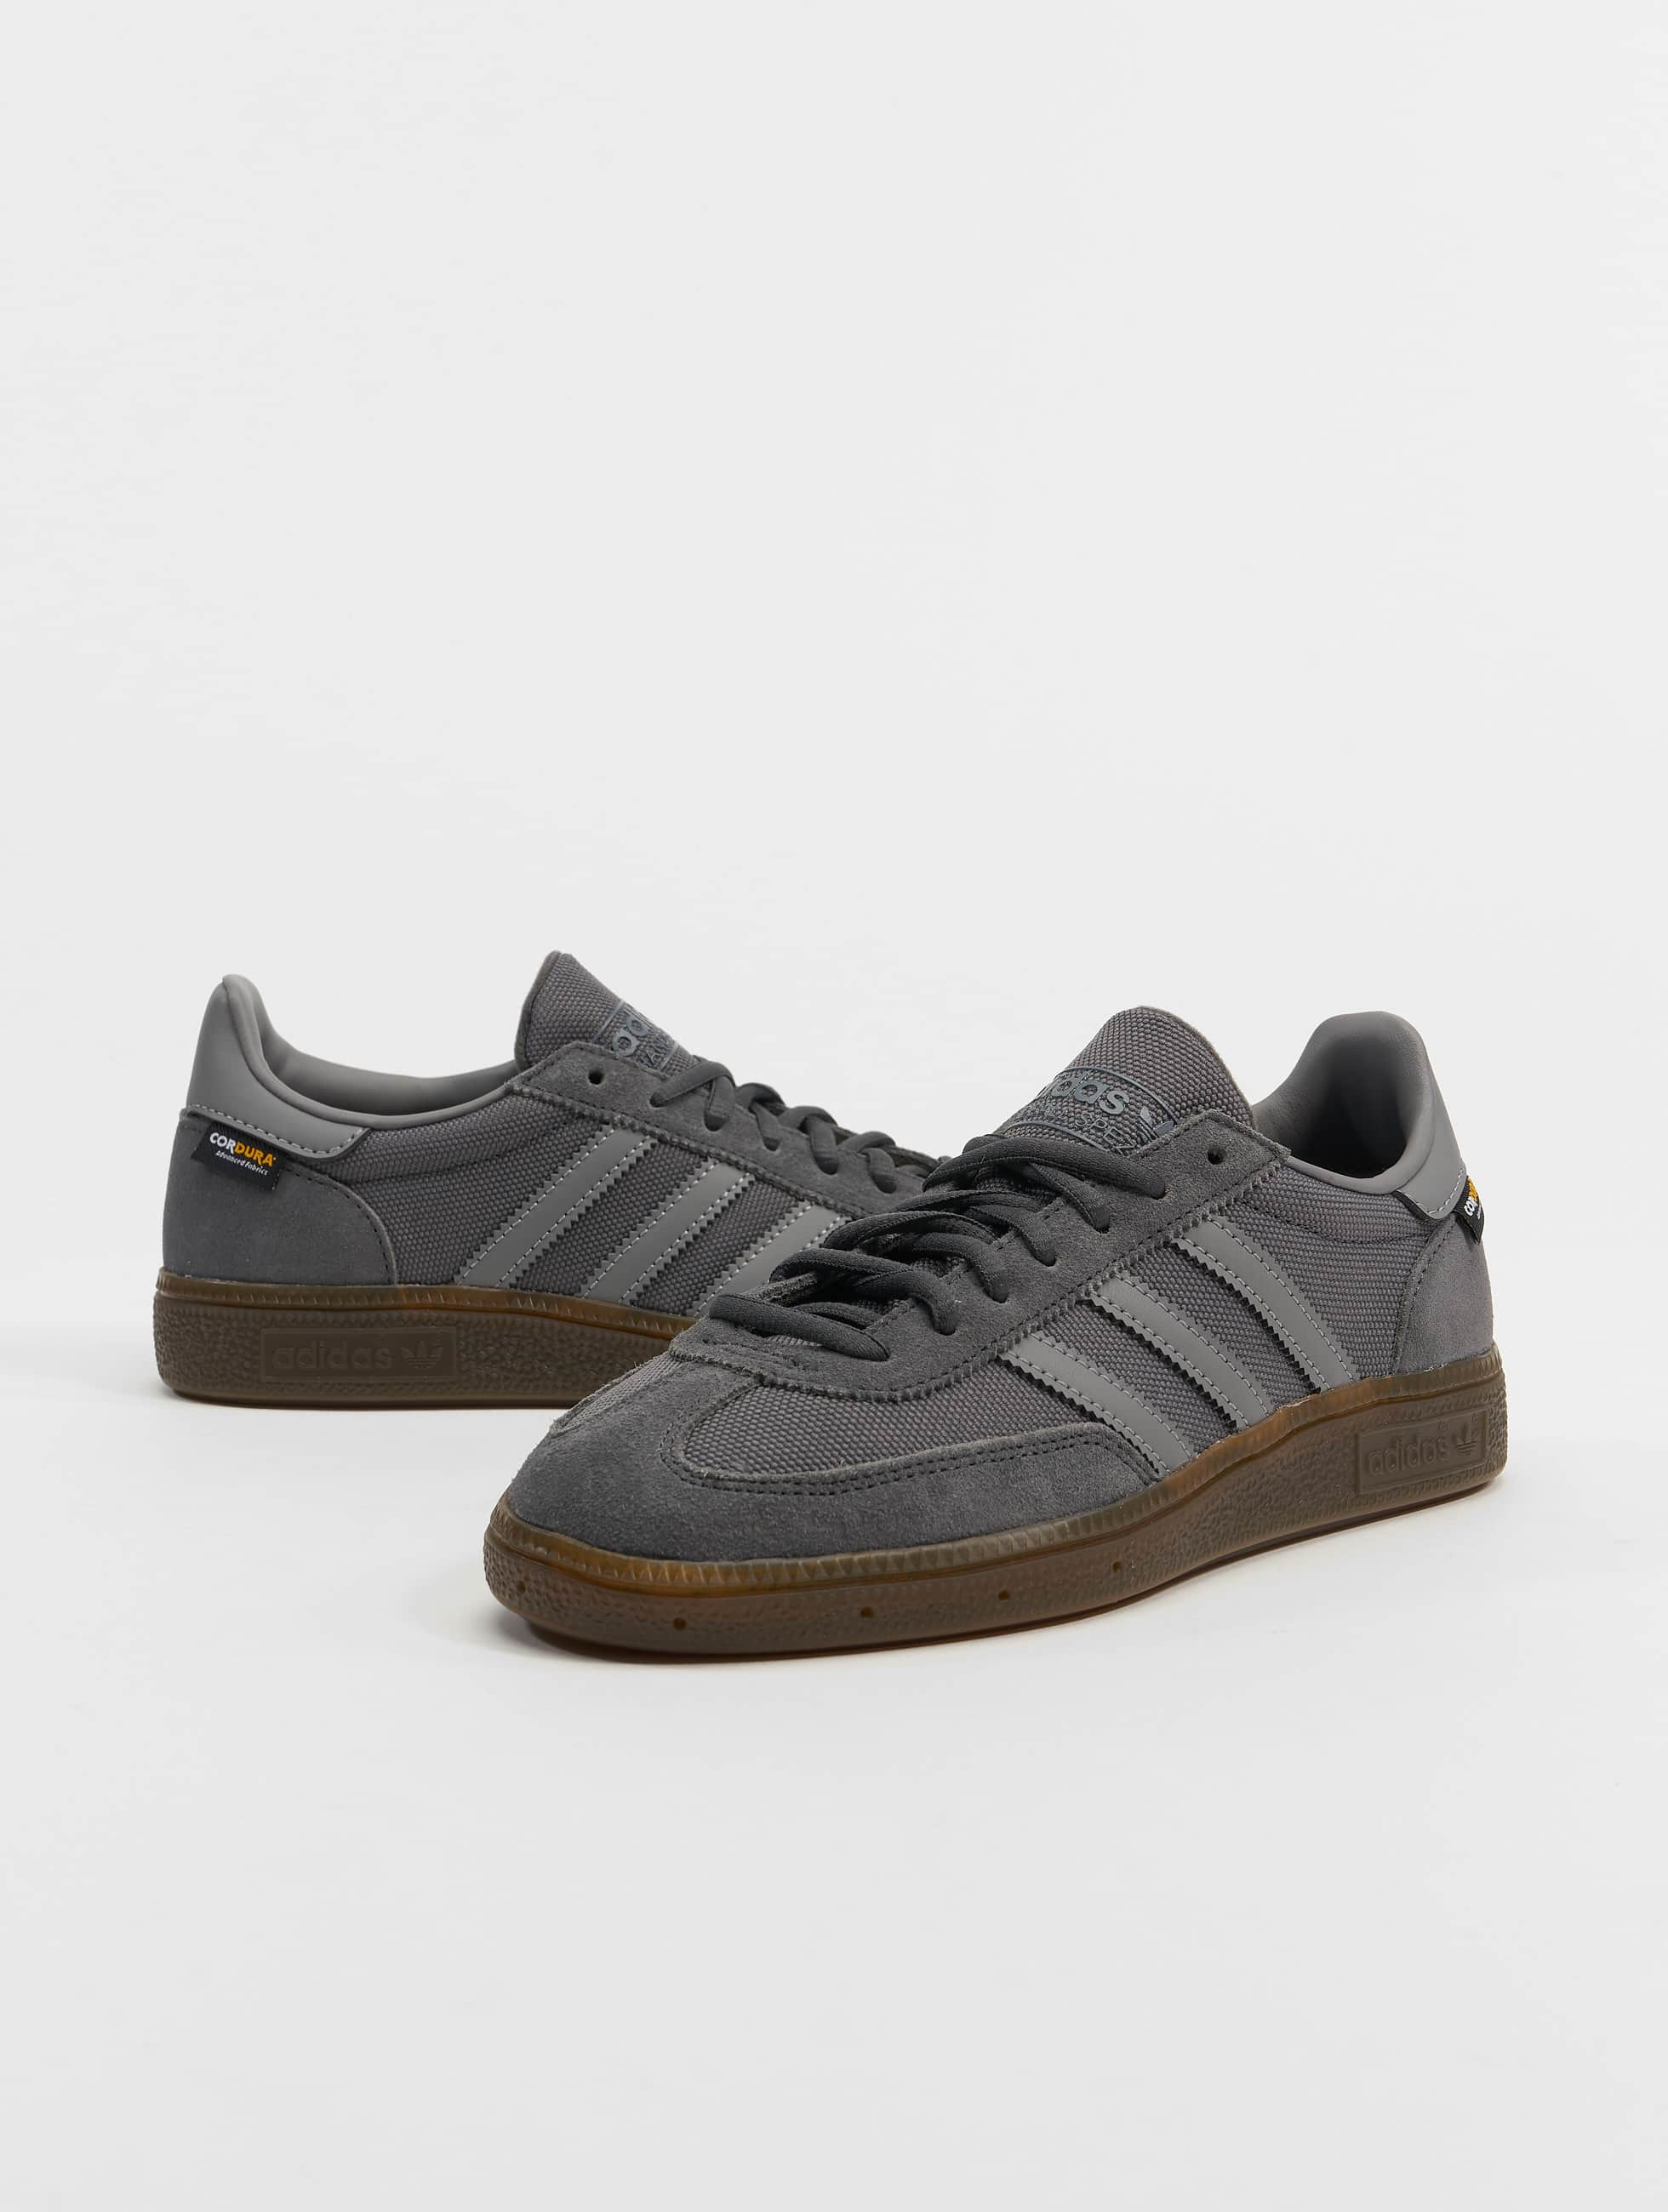 adidas Originals Shoe / Spezial in grey 997092